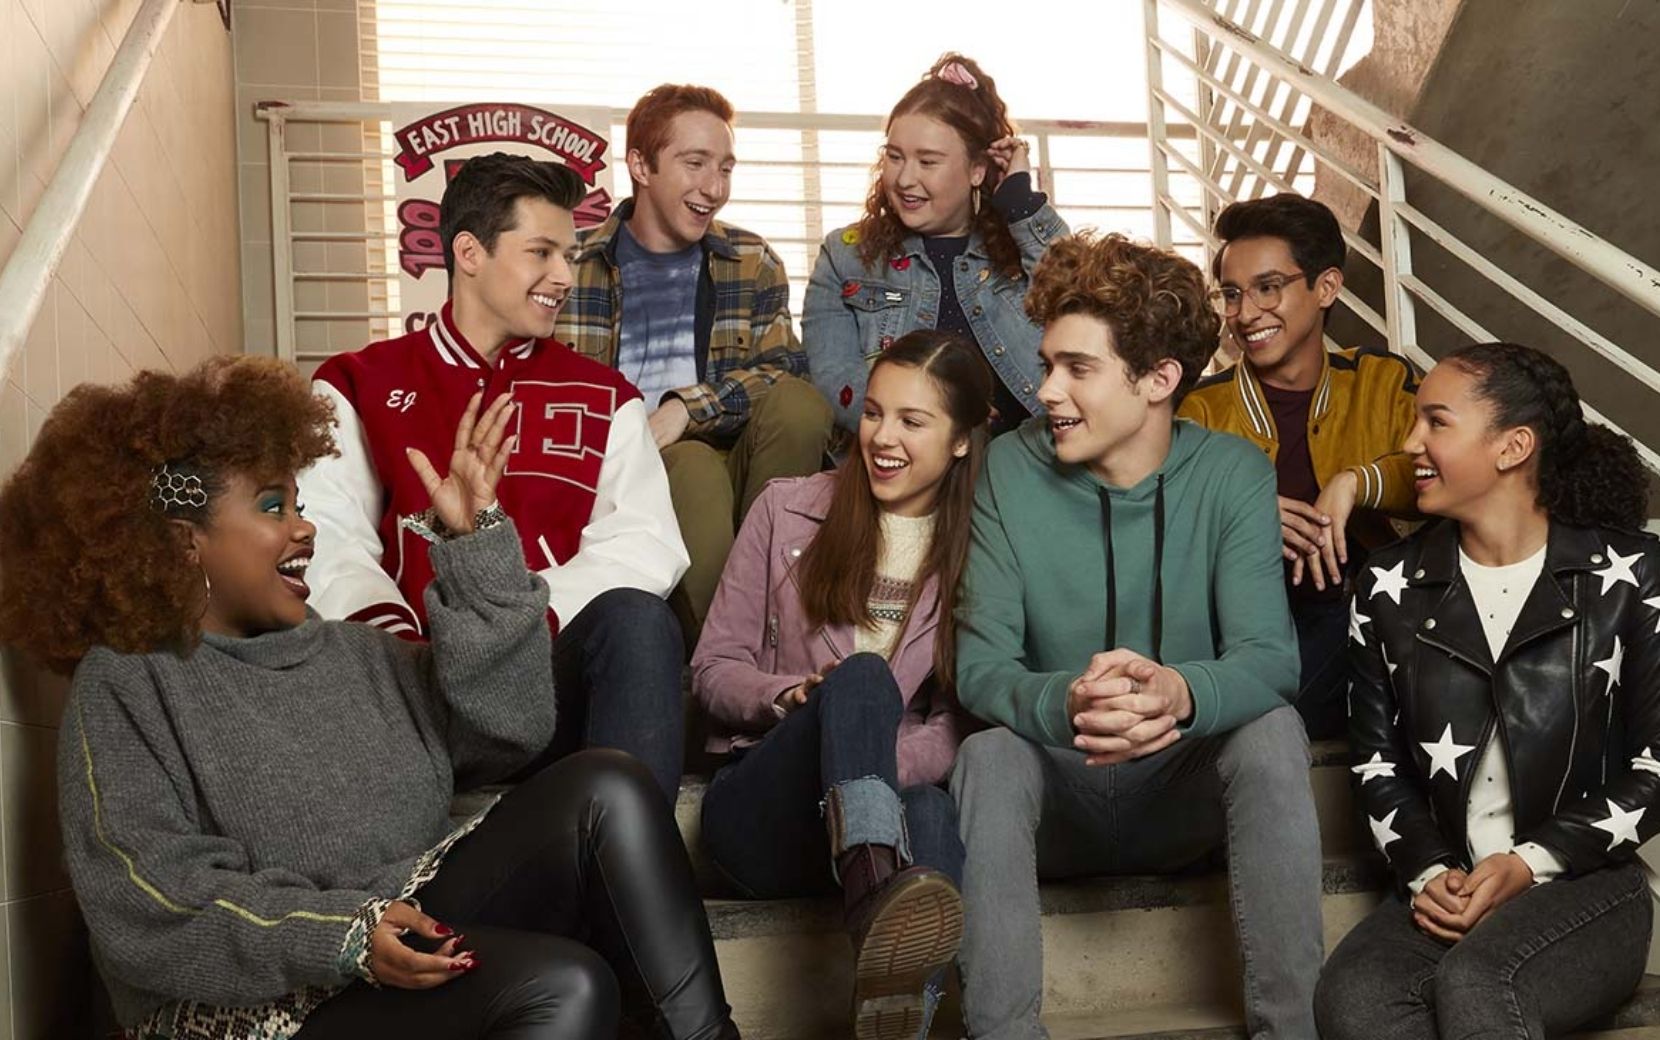 Elenco da série de "High School Musical" está icônico nas fotos oficiais da 2ª temporada